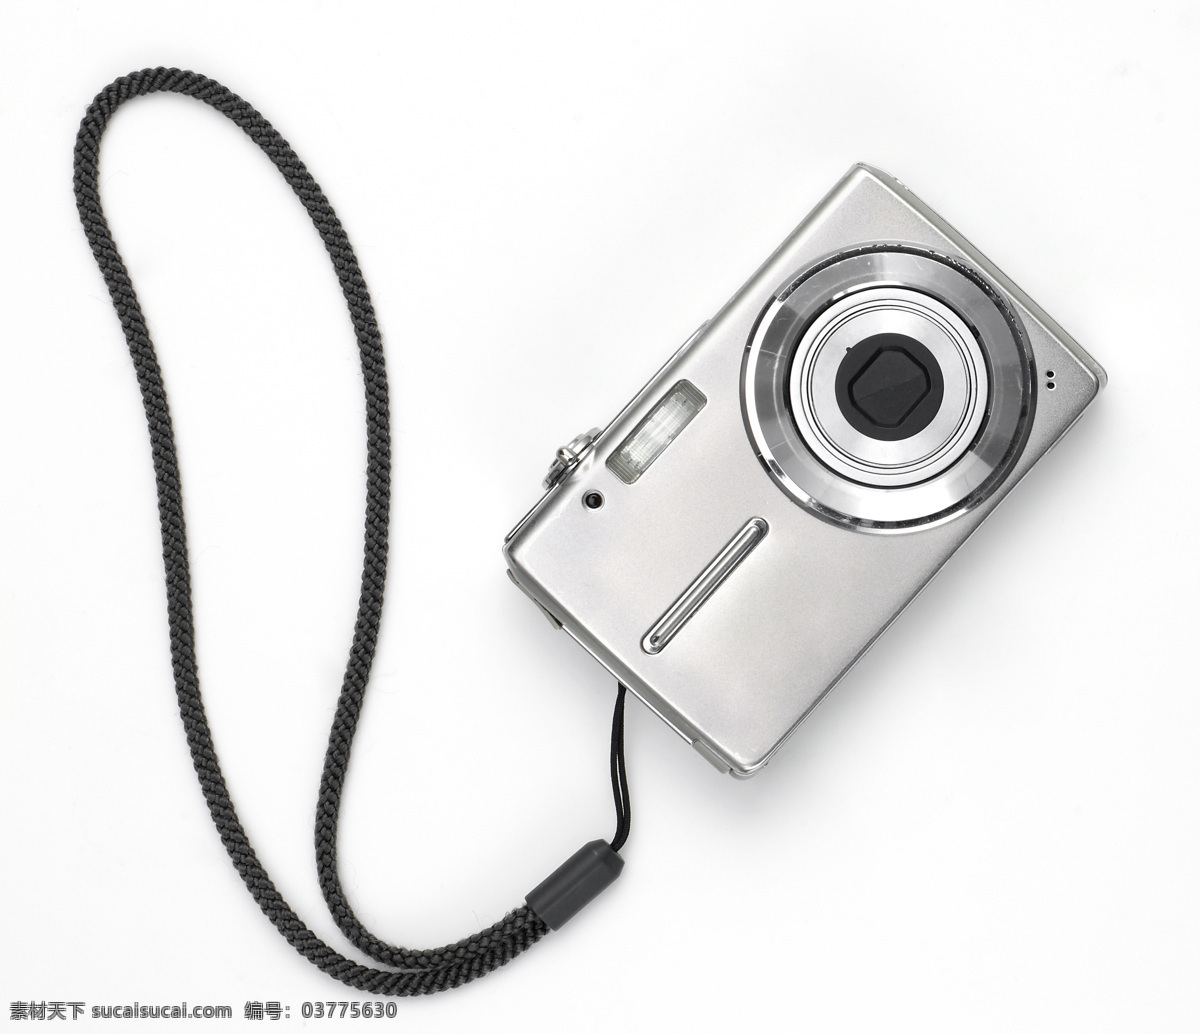 卡片机 照相机 数码相机 电子数码产品 摄影器材 影音娱乐 生活百科 白色